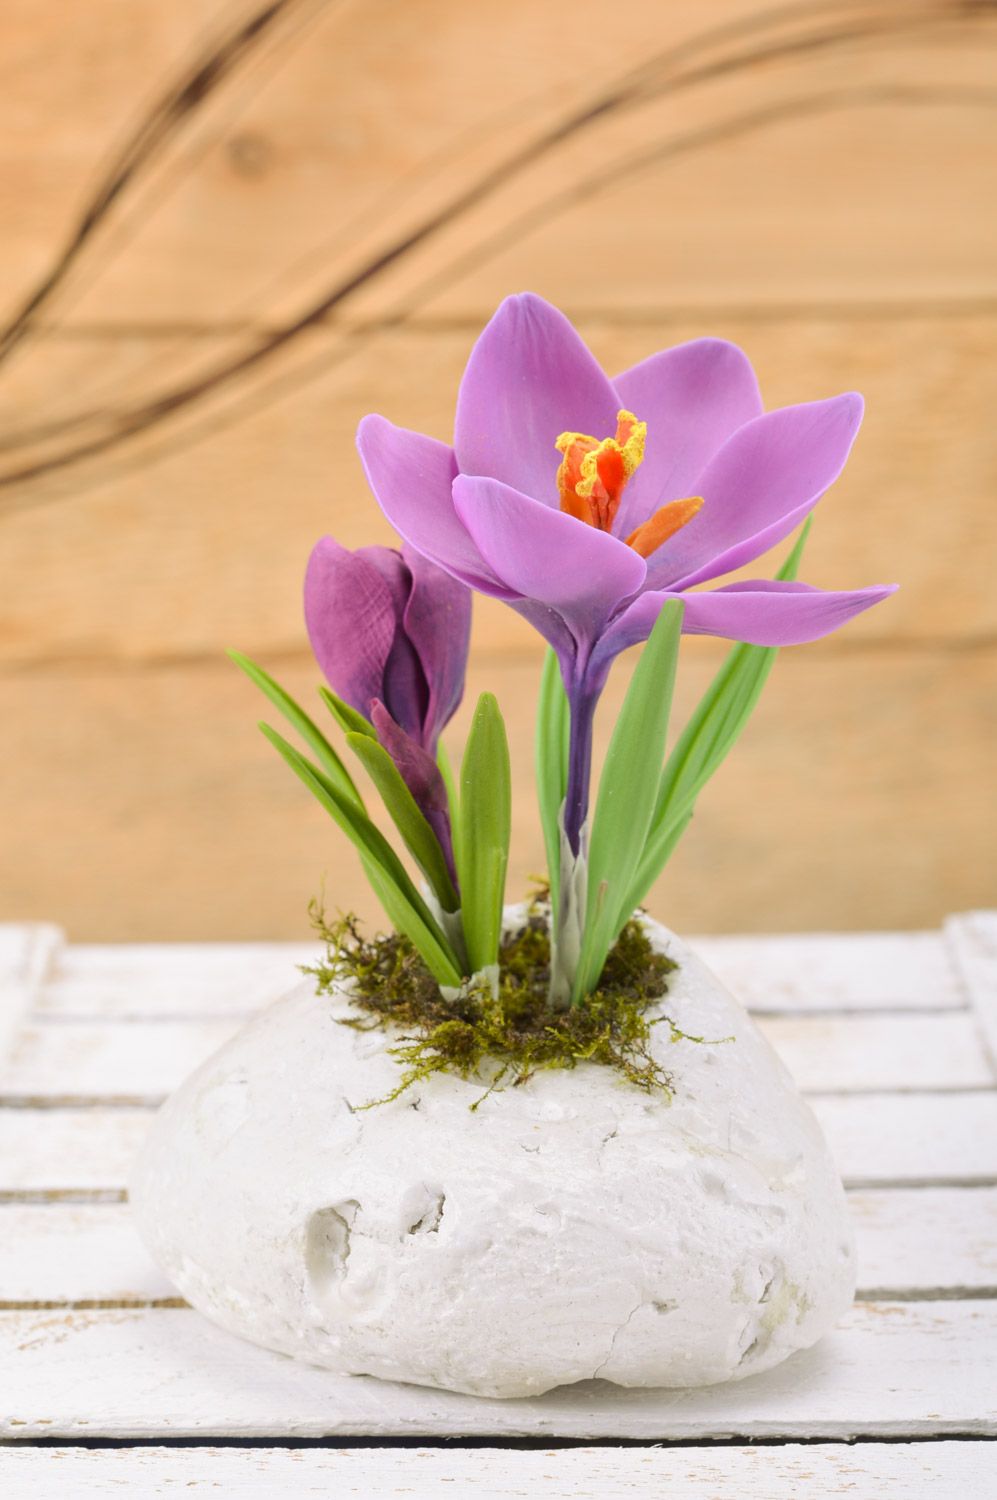 Синереневый цветок крокус из полимерной глины ручной работы для декора интерьера фото 1